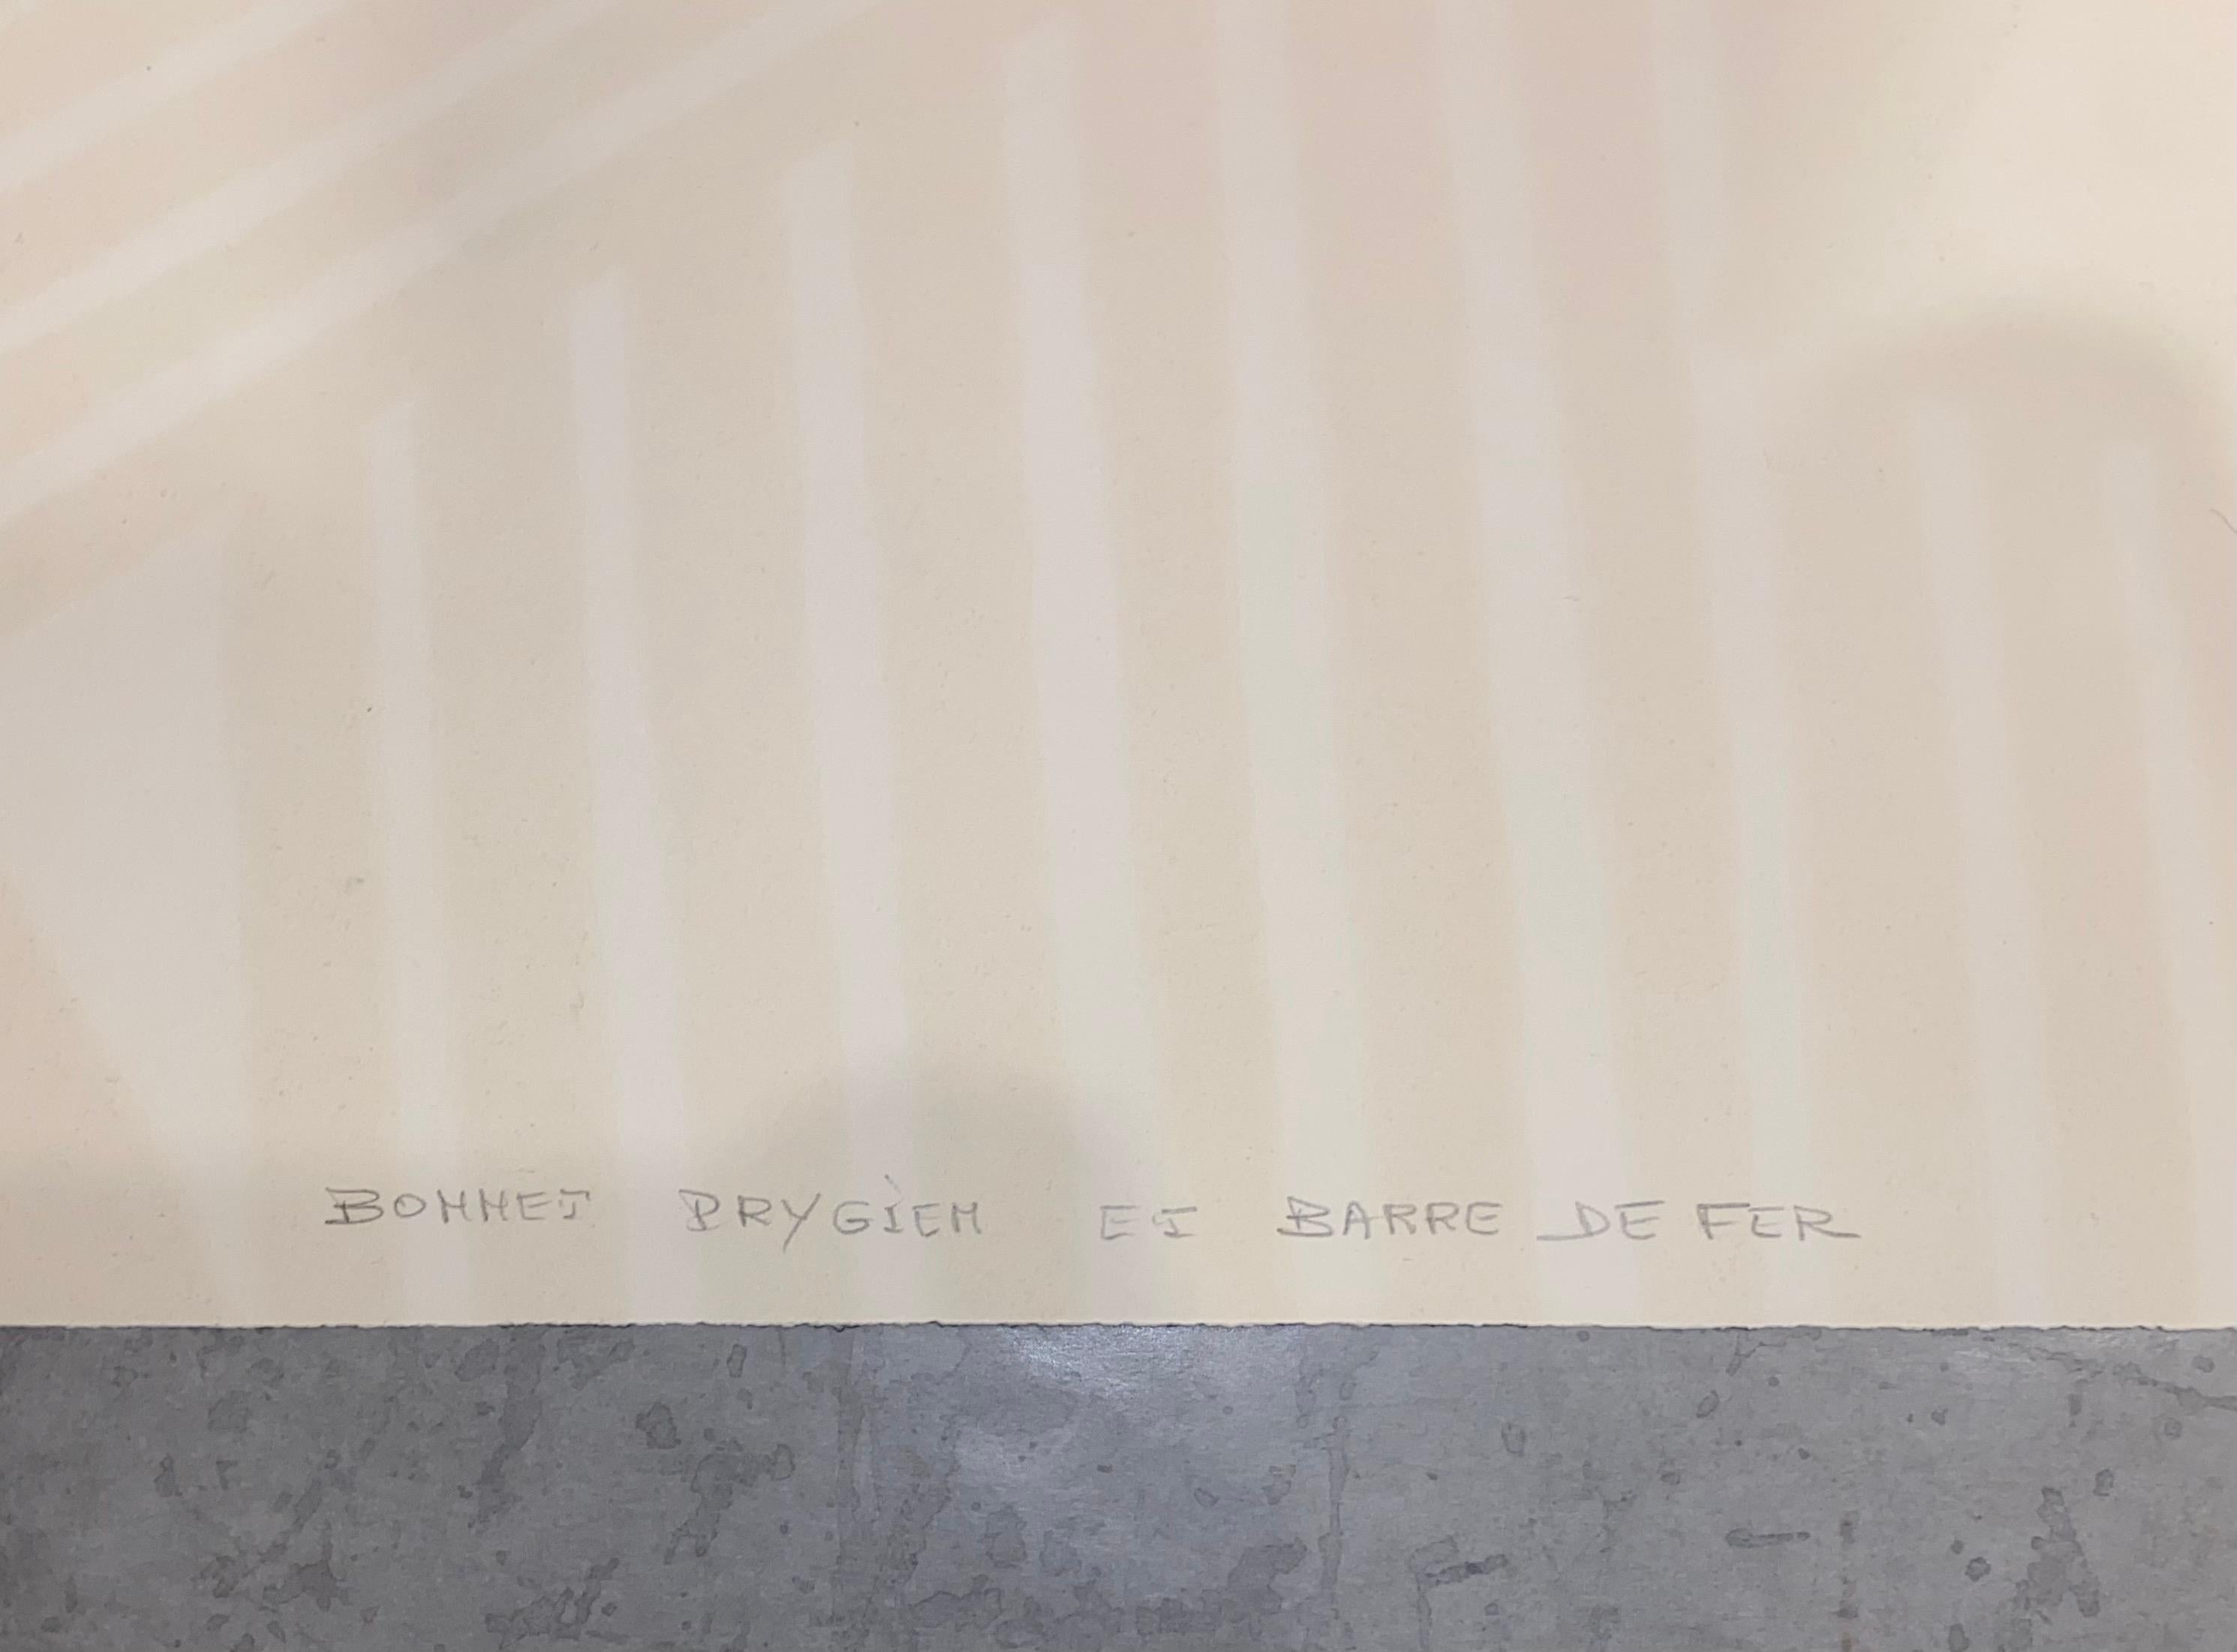 Phrygische Mütze und Eisenstange (Bonnet Phrygien et Barre de Fer), 1974
Farblithographie auf Chiffon de Mandeure Papier, vollrandig, gerahmt
Maeght Editeur, Paris
29,5 x 43,3 Zoll 
Signiert und nummeriert mit Bleistift, Auflage